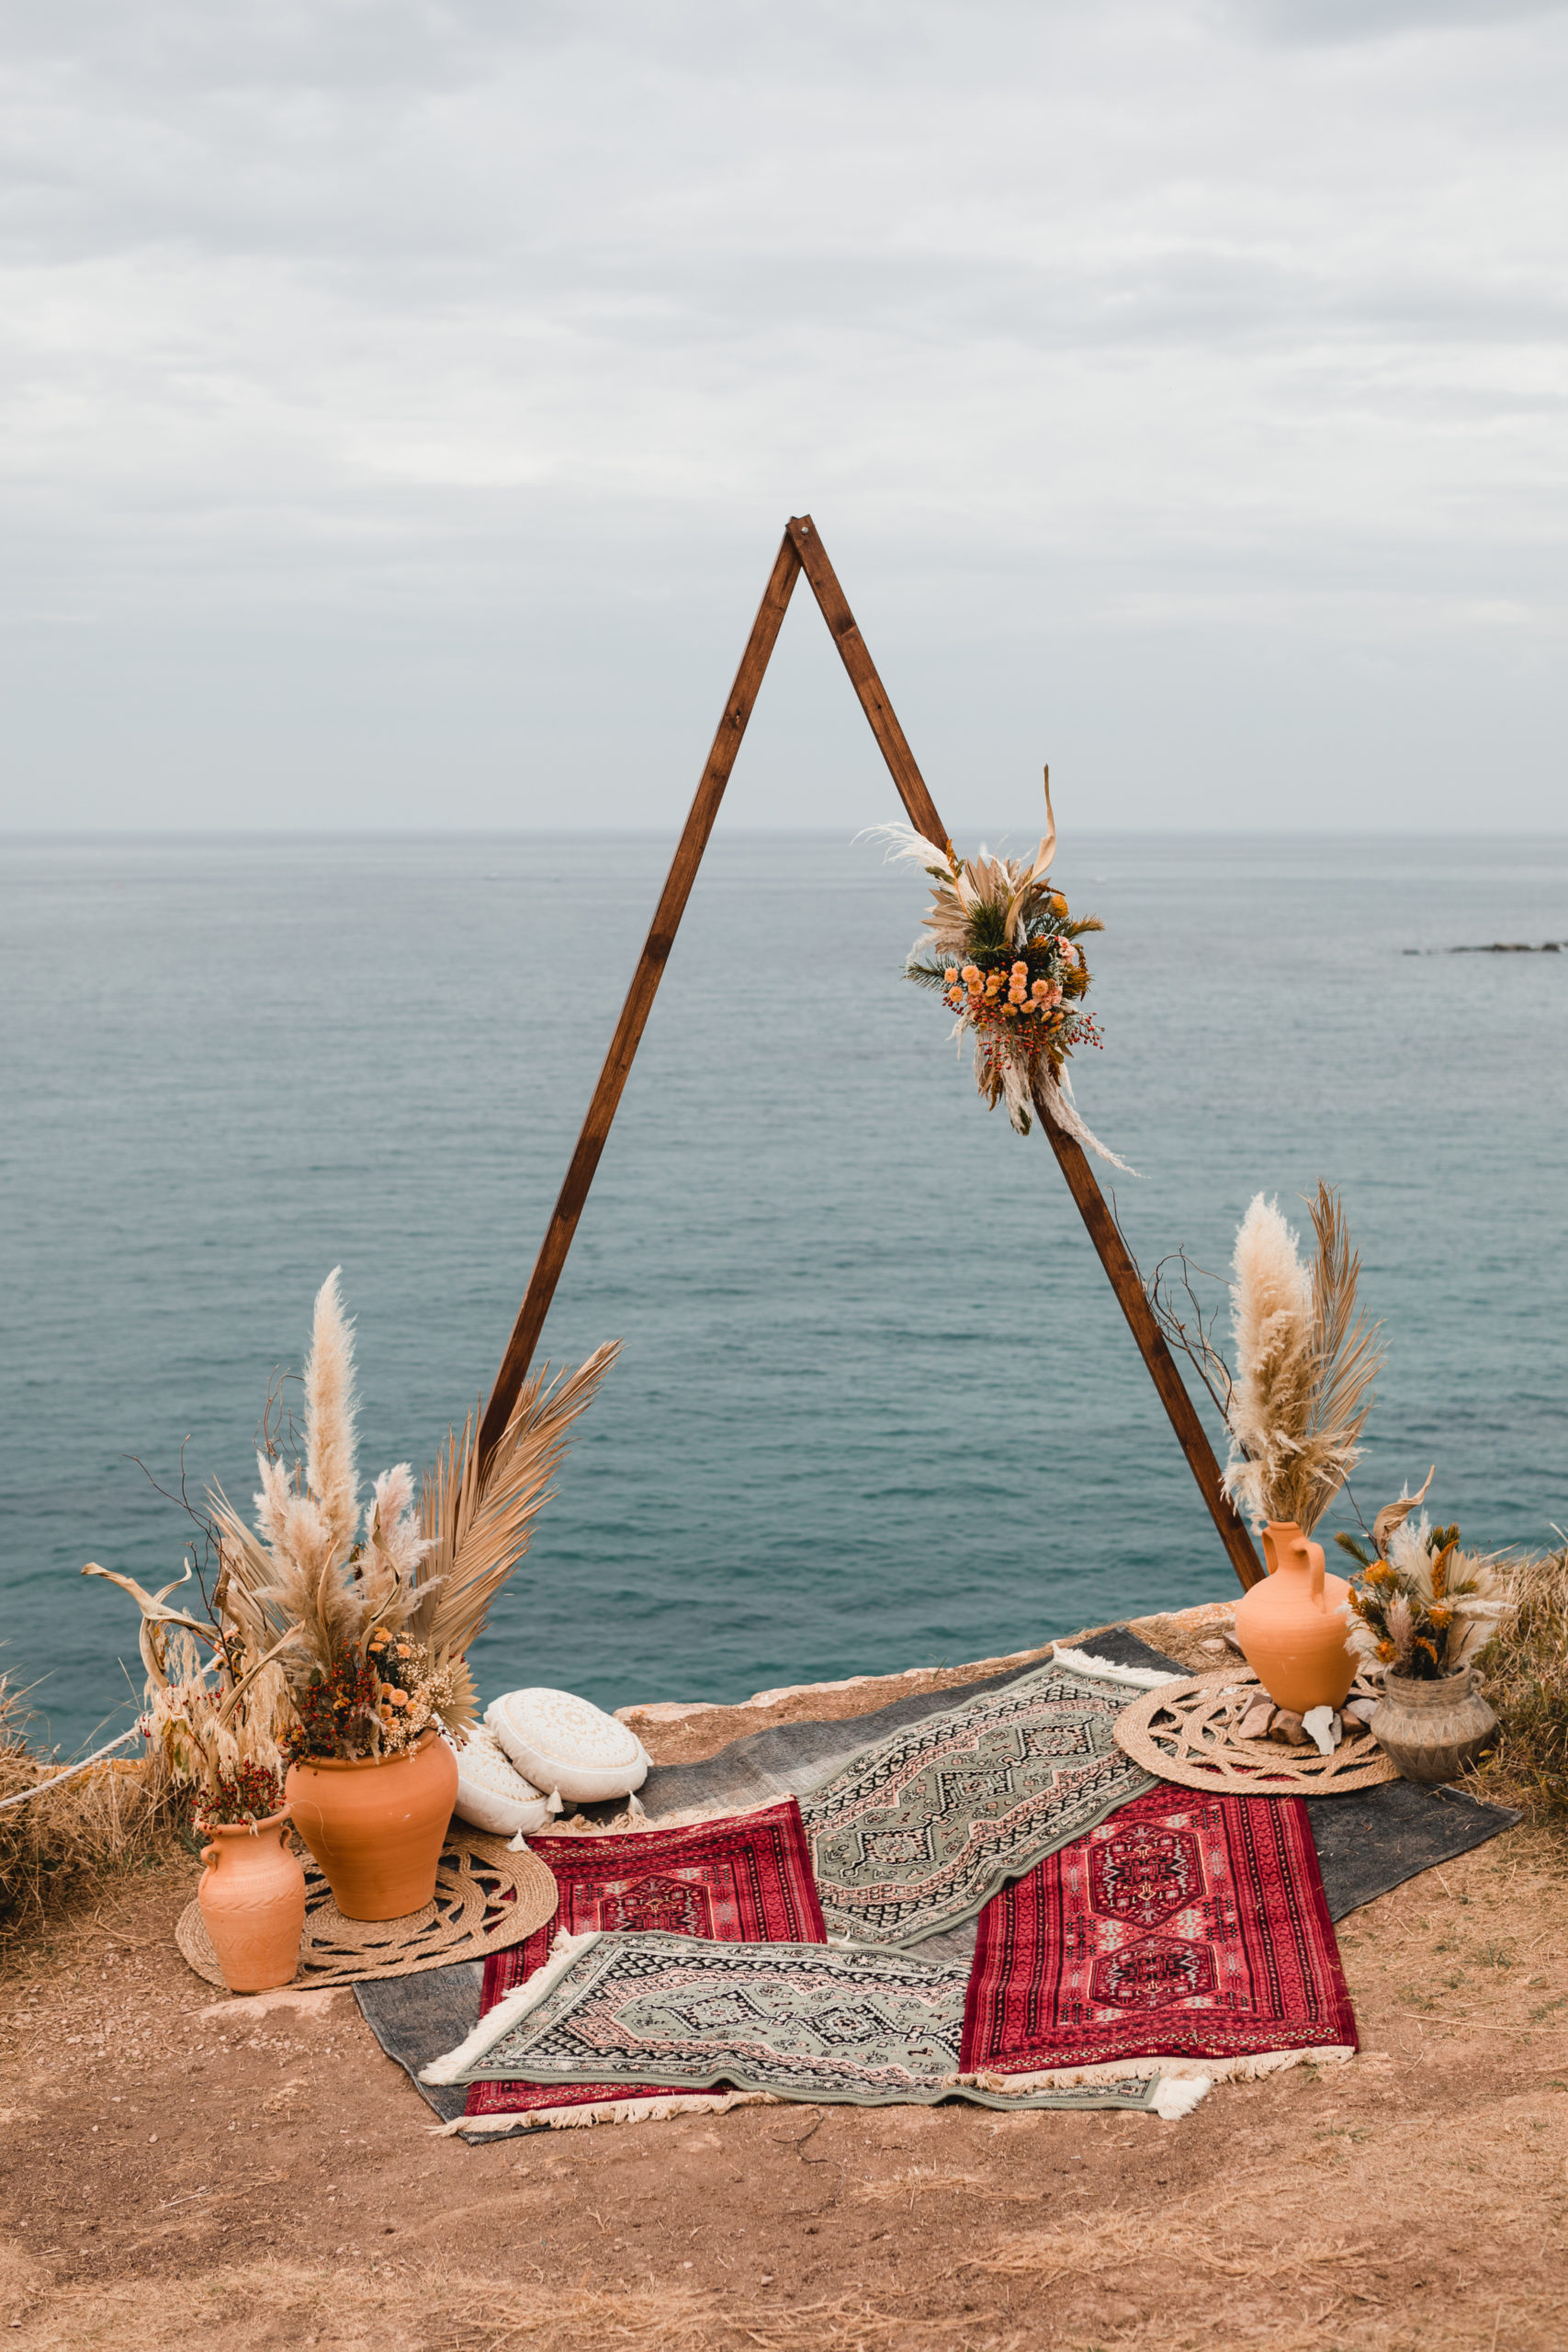 Ceremonia nupcial con arco, alfombras, cojines, jarrones y flores, con el mar de fondo